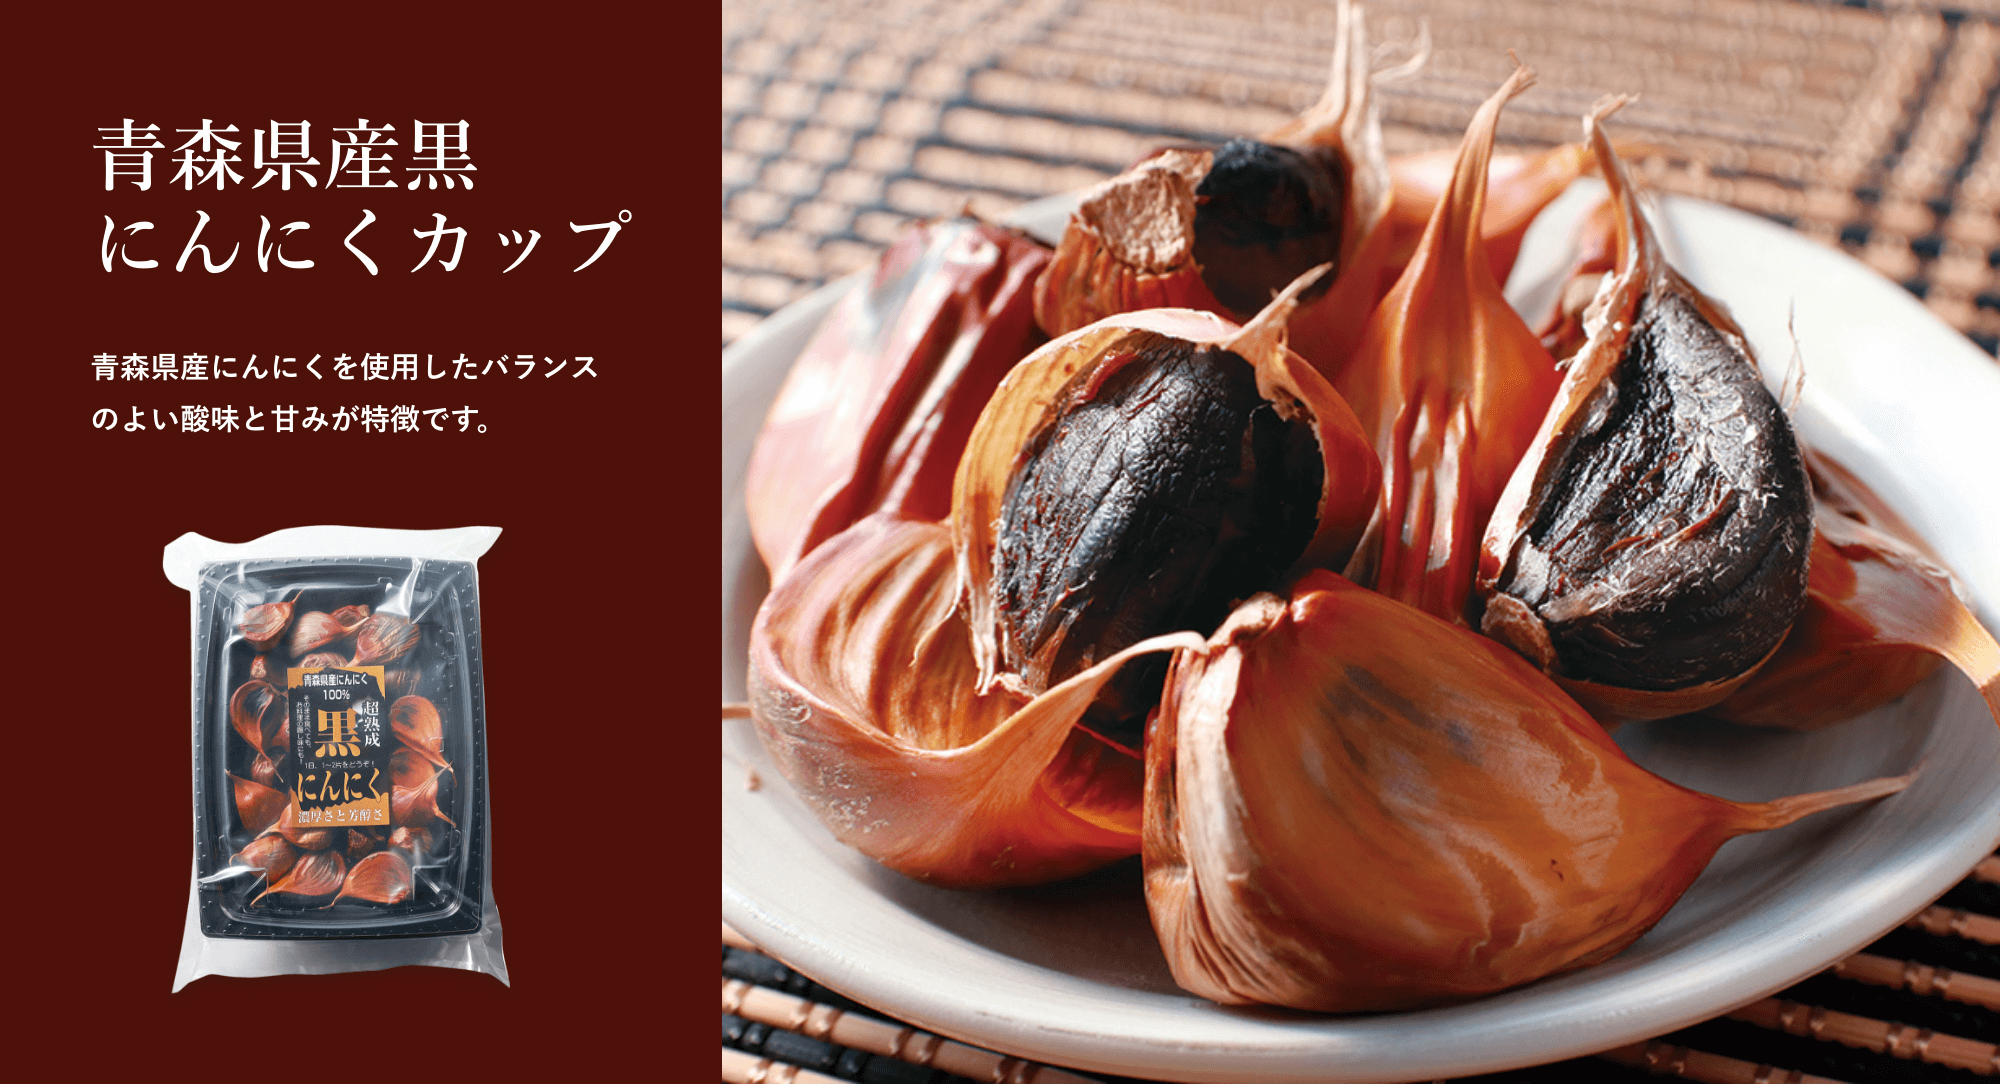 青森県産にんにくを使用したバランスのよい酸味と甘みが特徴です。